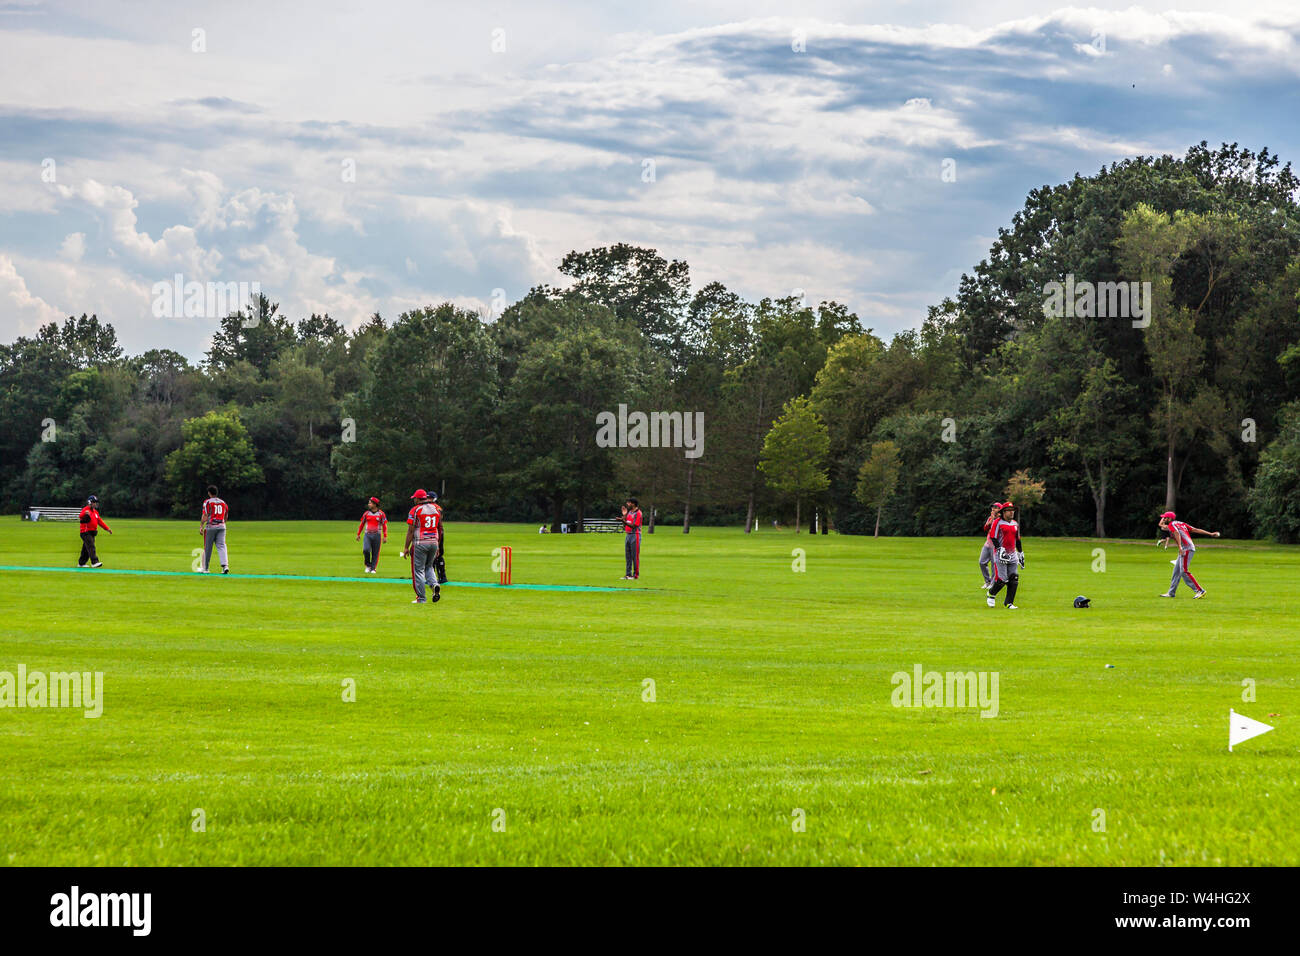 Aug 6 , 2017, Sunnybrooke park, Toronto, Ontario - Cricket players practising their game Stock Photo